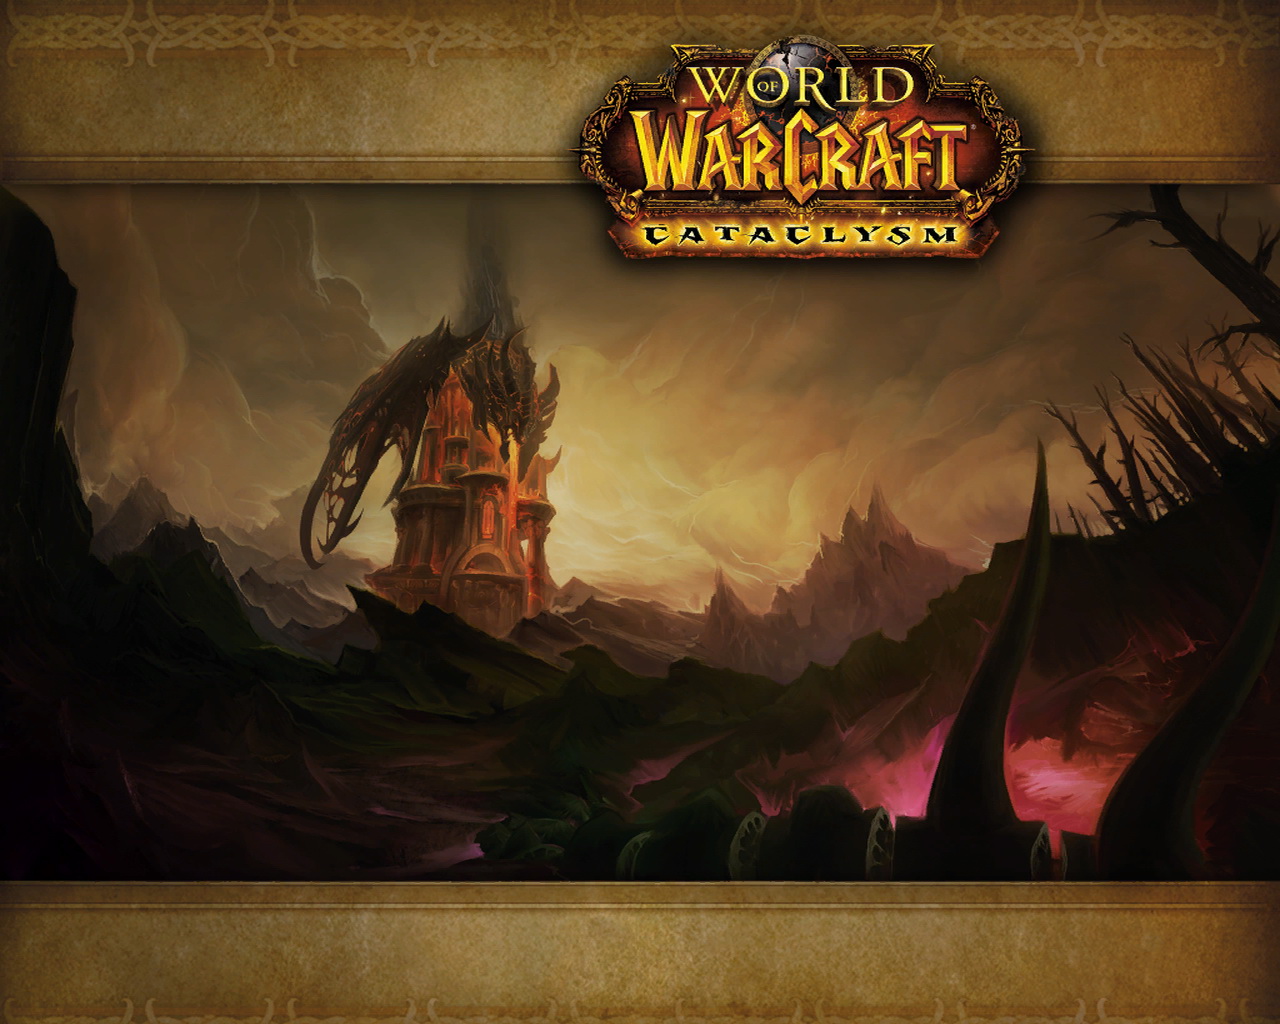 Загрузочный экран 3. Варкрафт загрузочные экраны. World of Warcraft загрузочные экраны. Ворлд оф варкрафт загрузочный экран. Загрузочный экран World of Warcraft Cataclysm.